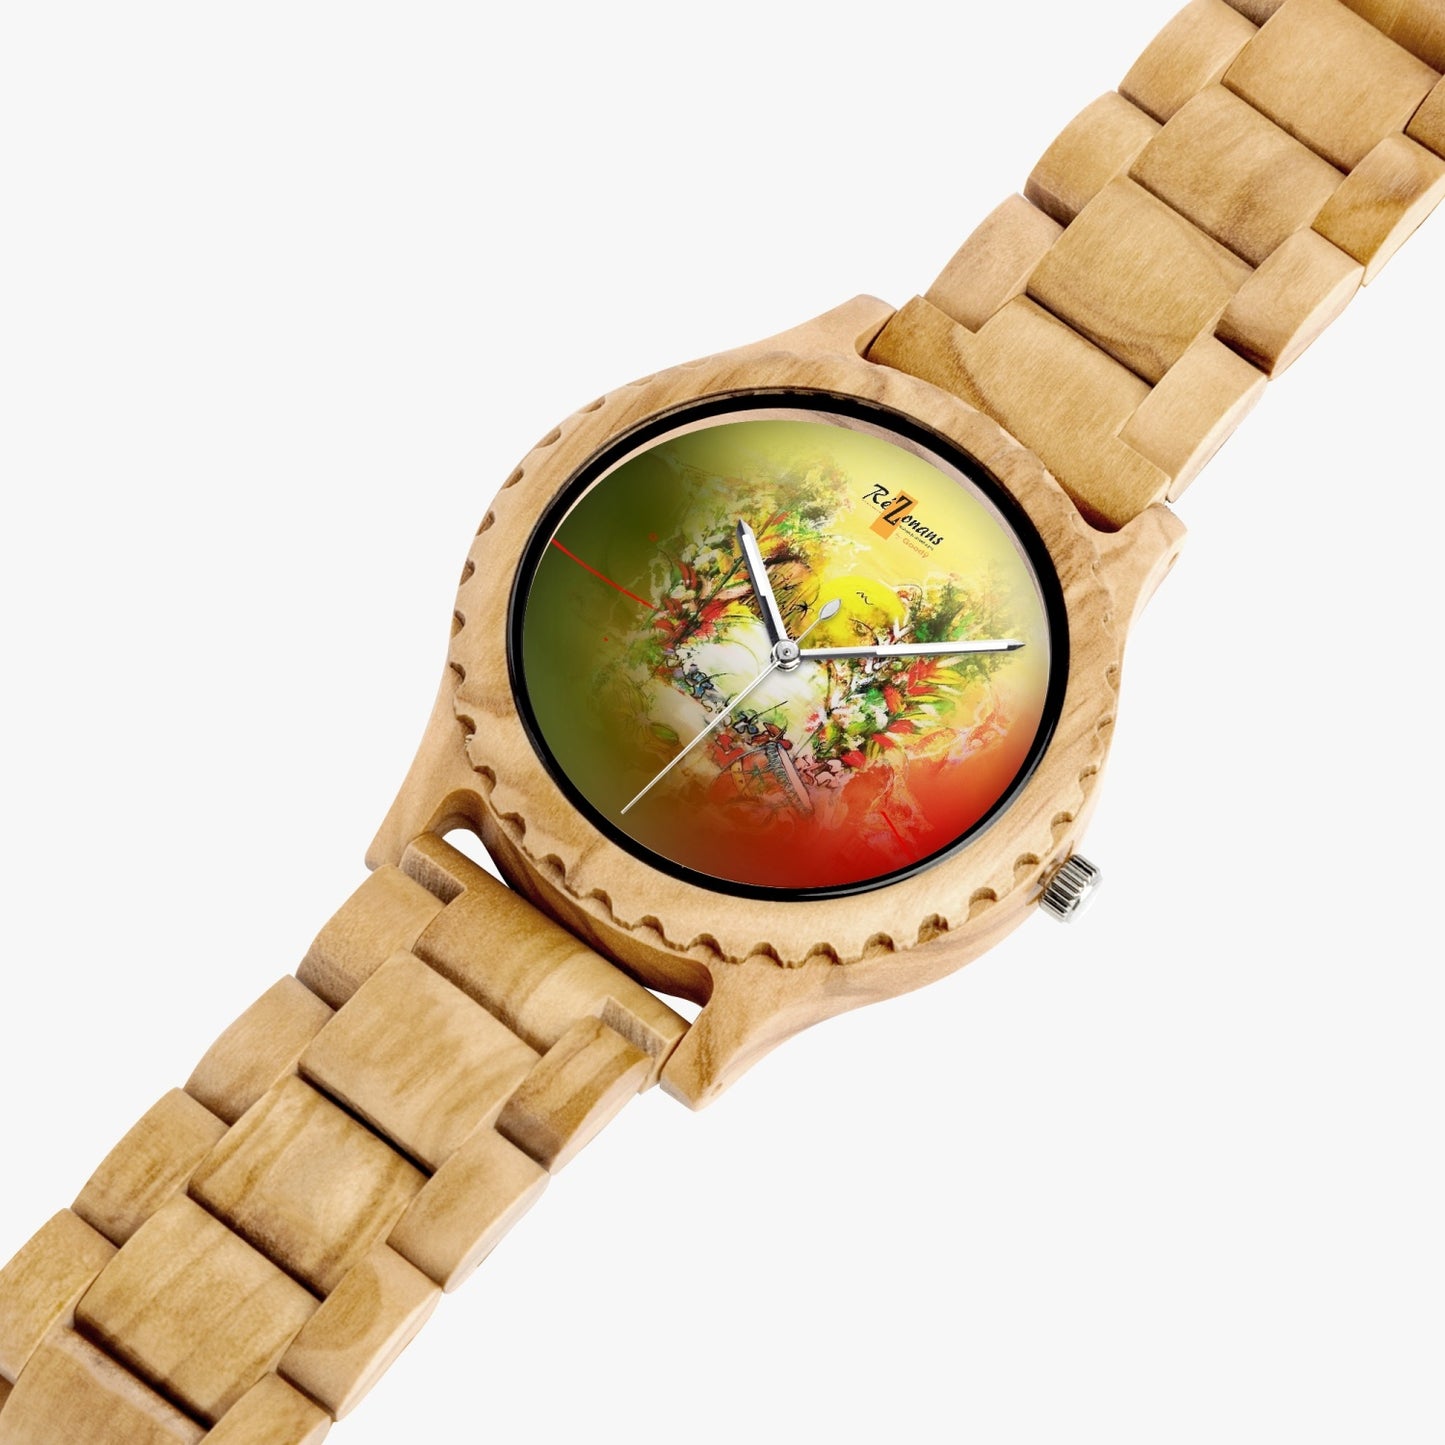 Natural wood watch "Flèpéyi"